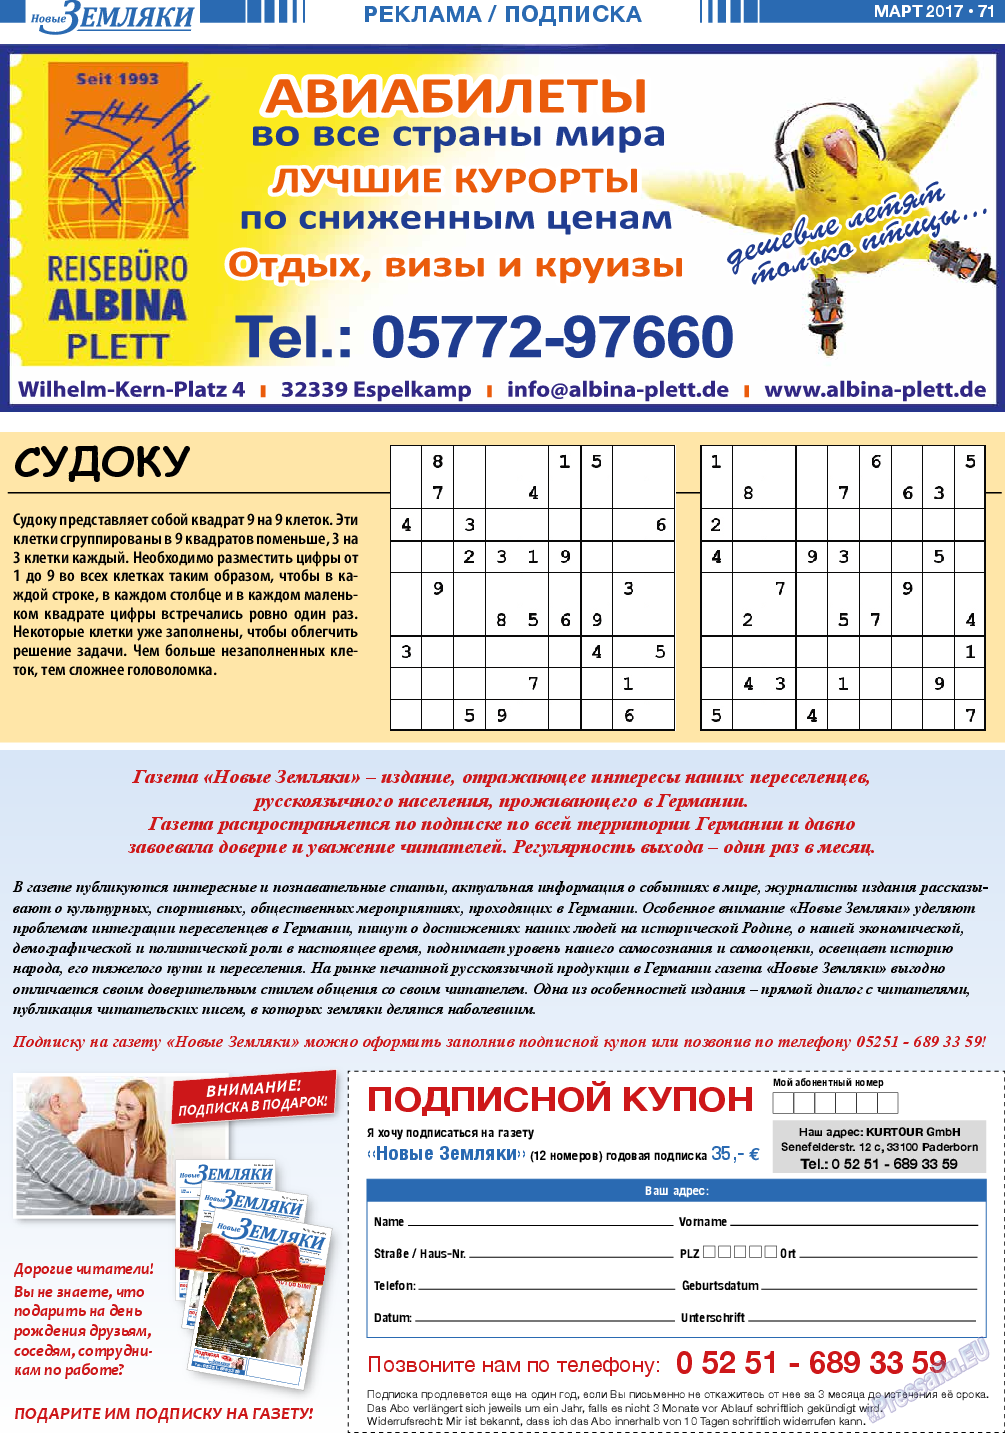 Новые Земляки, газета. 2017 №3 стр.71